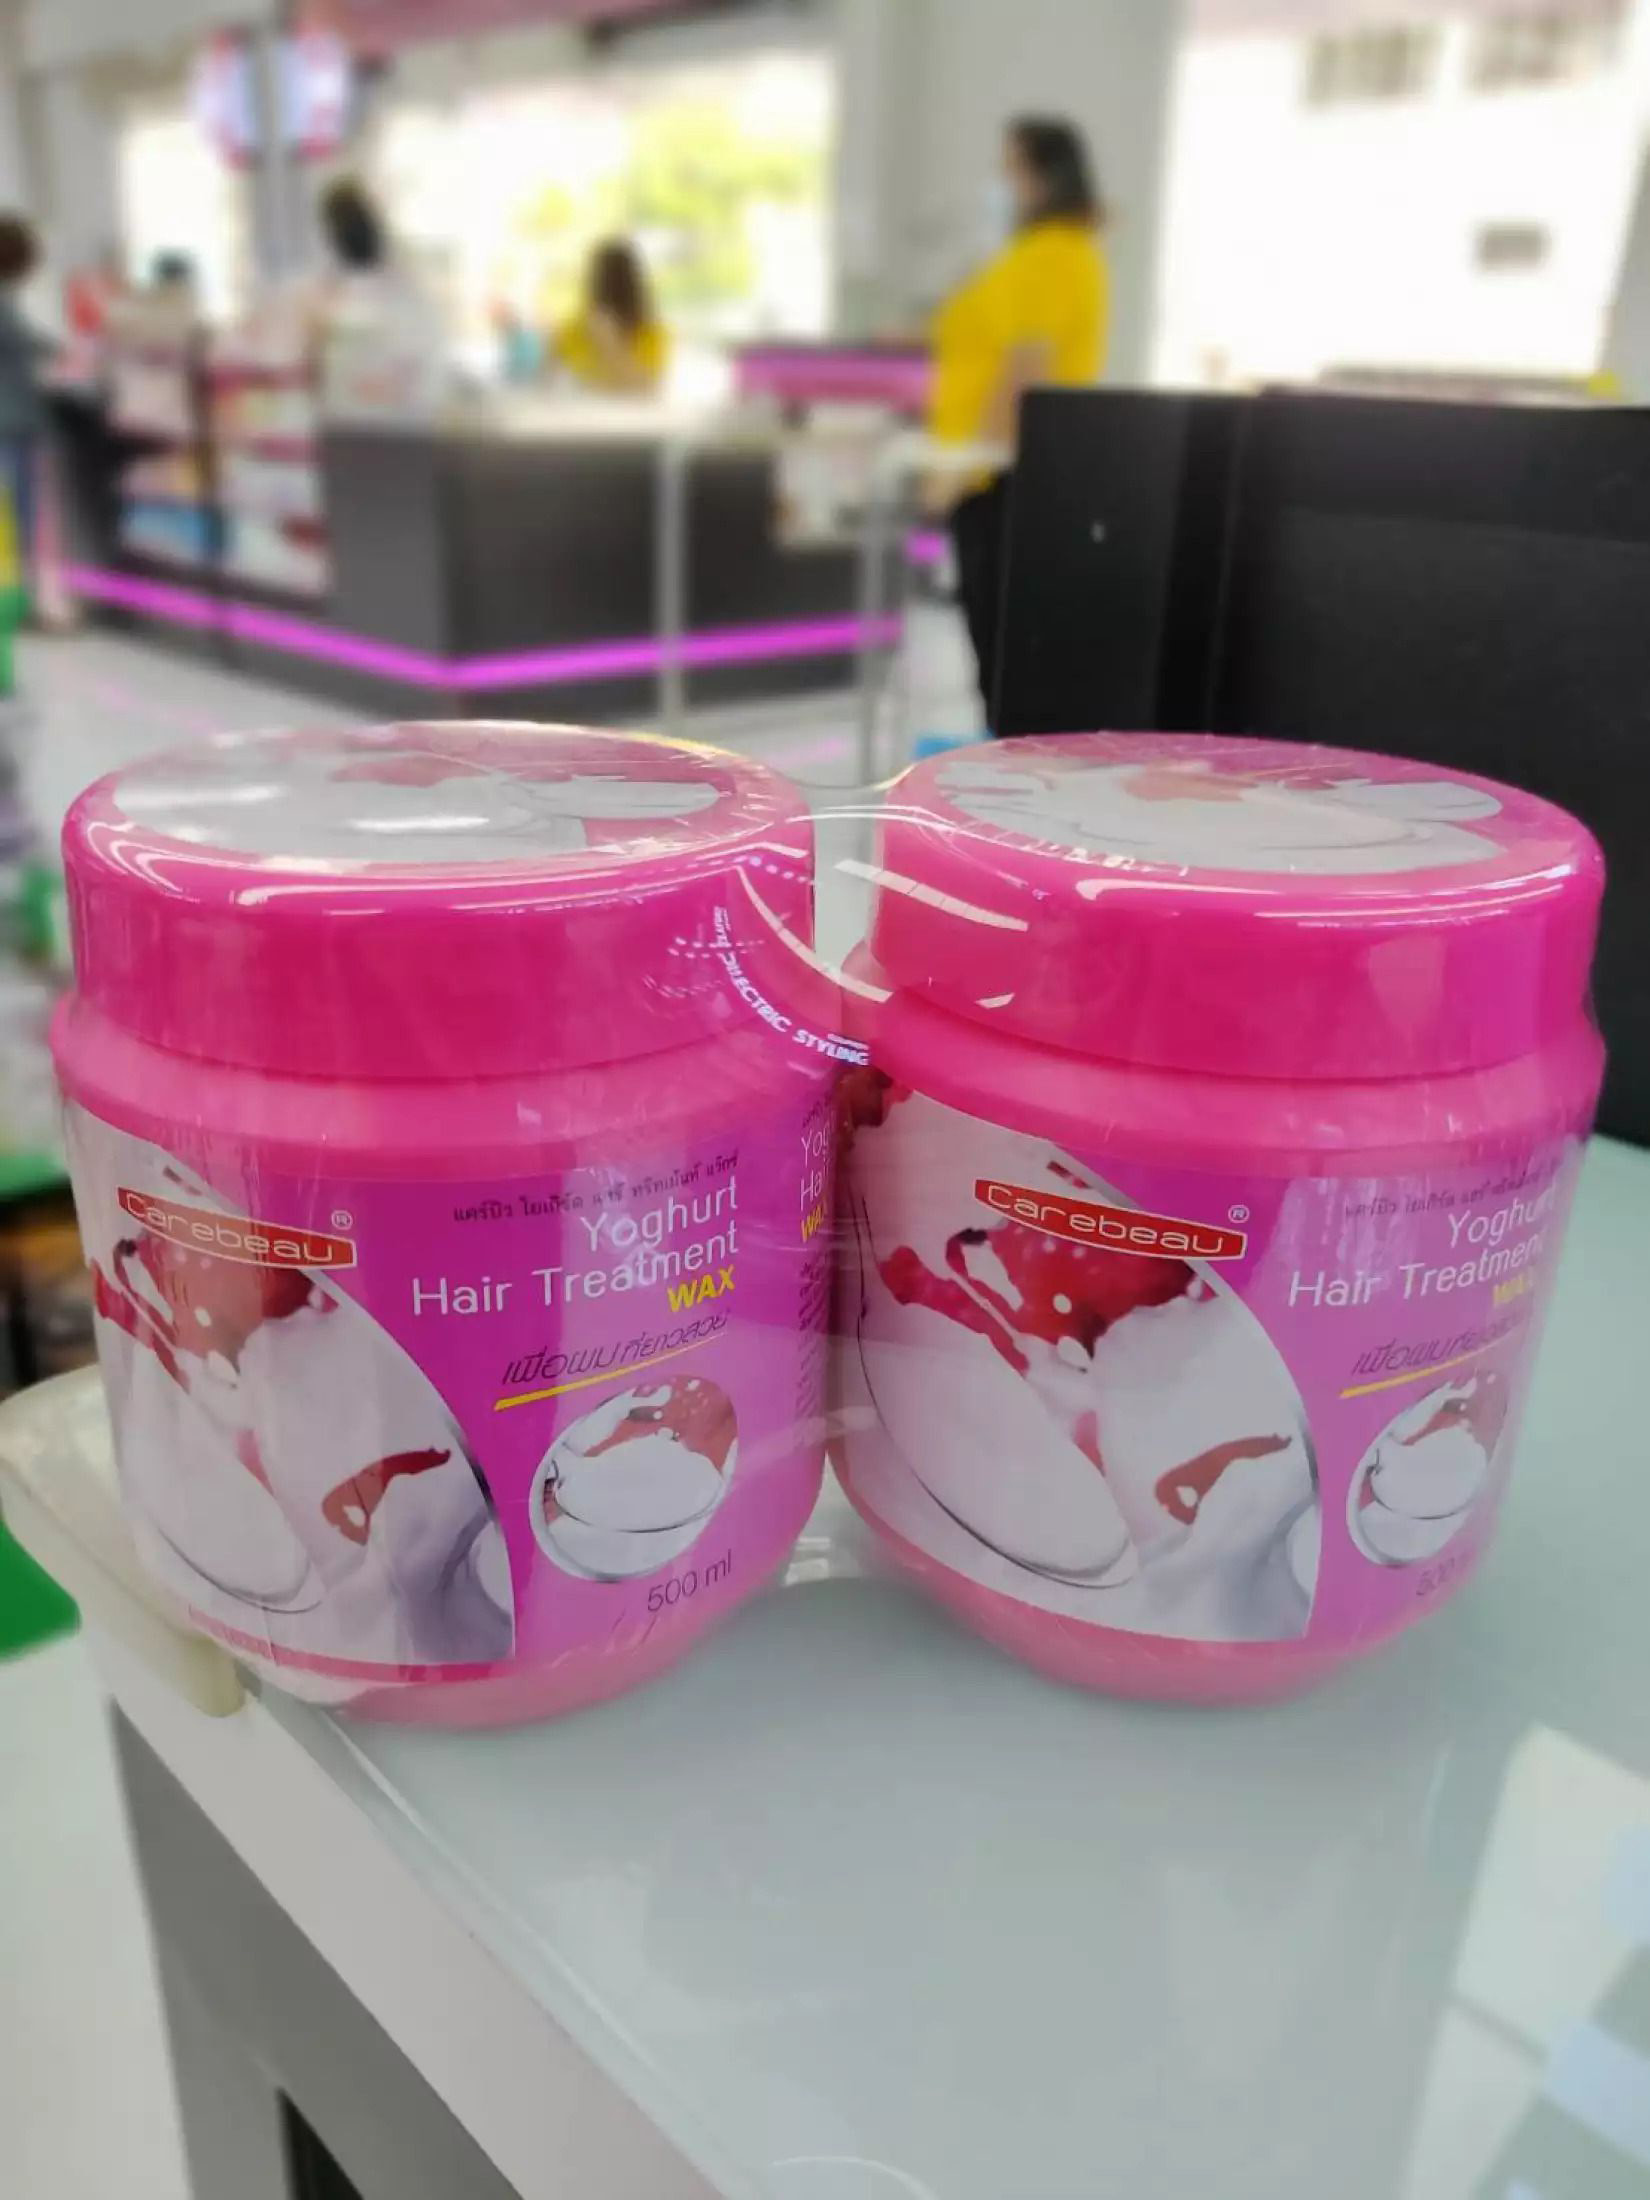 ТАЙСКАЯ МАСКА ДЛЯ ВОЛОС Carebeau с Йогуртом купить в Москве. Тайская йогуртовая маска для волос Carebeau Yoghurt Hair Treatment 500 мл.